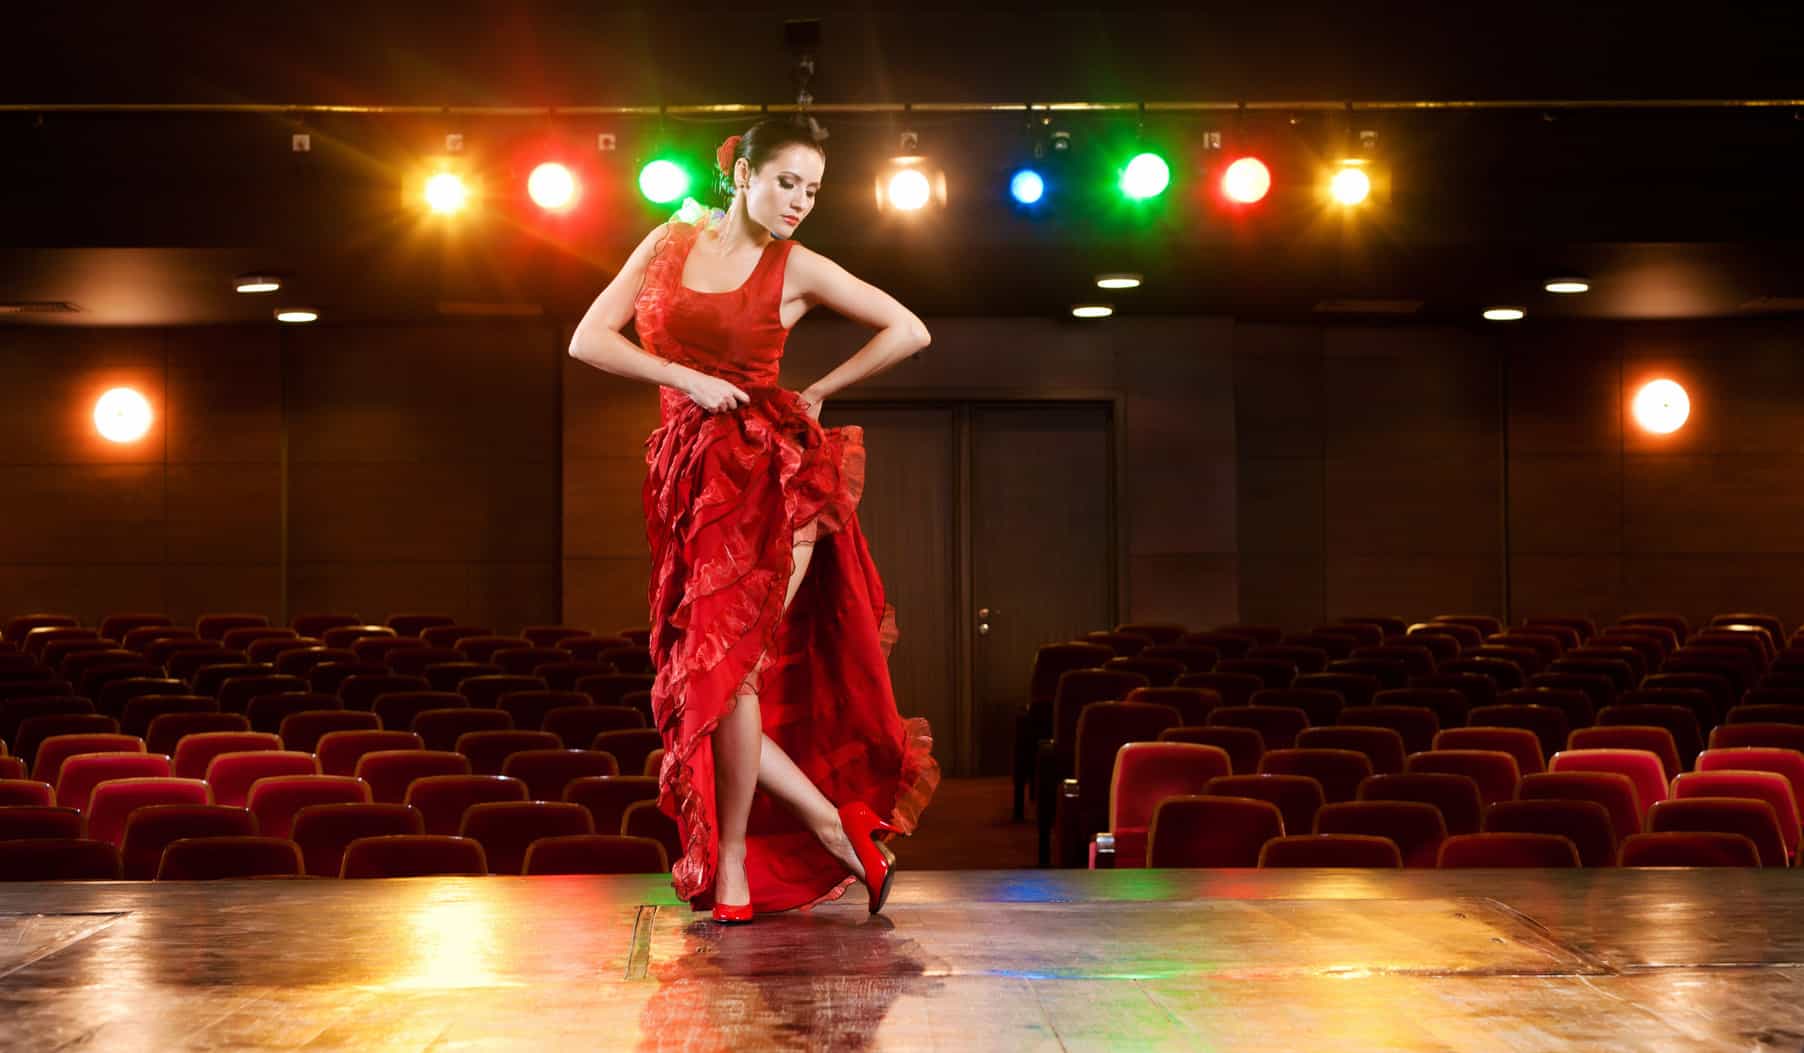 tancerka flamenco w czerwonej sukni na scenie